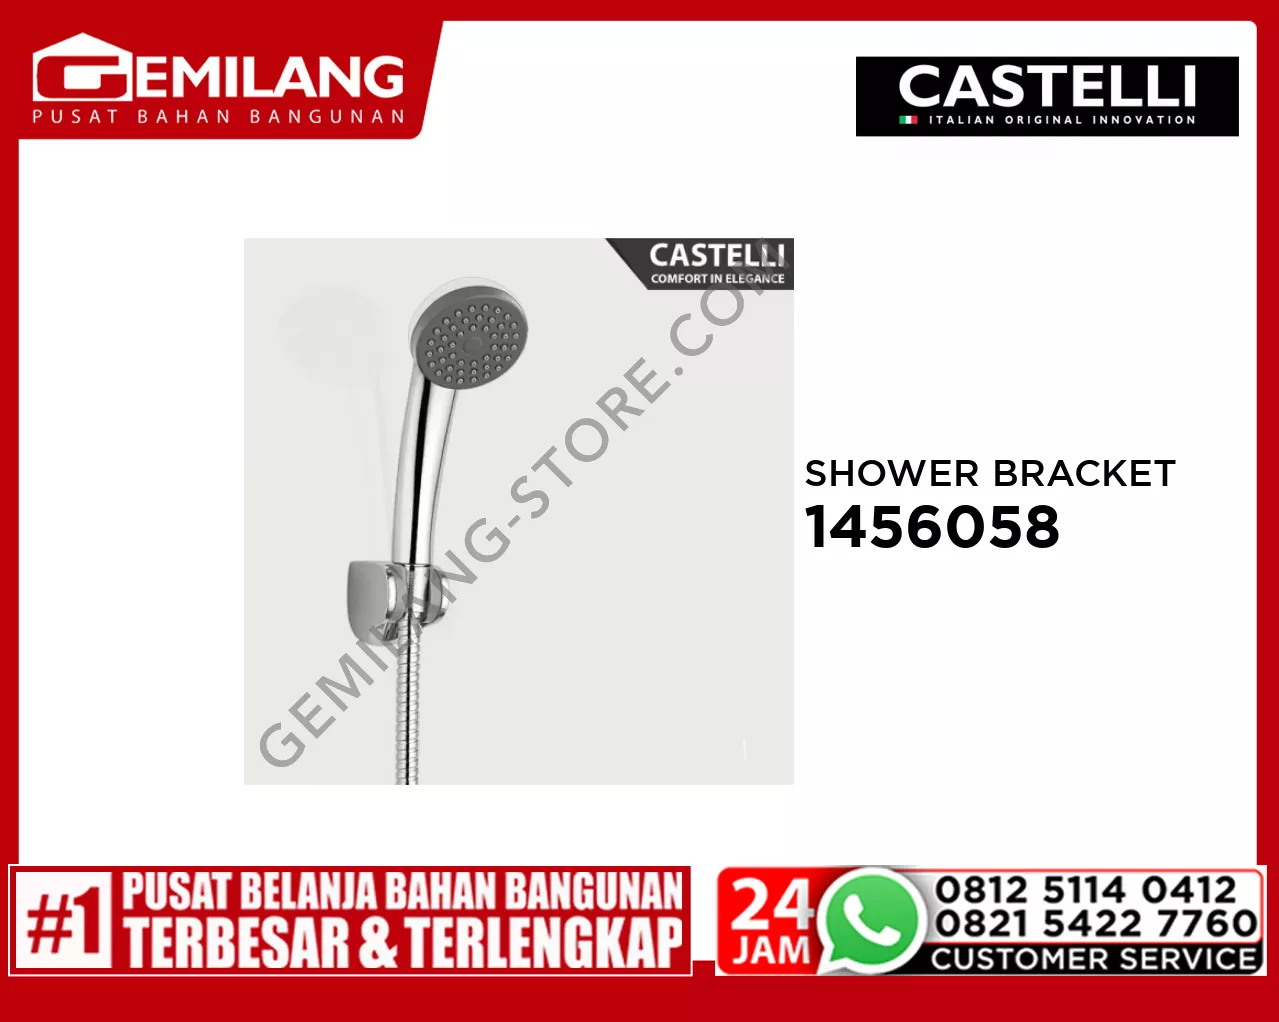 CASTELLI SHOWER BRACKET 1456058